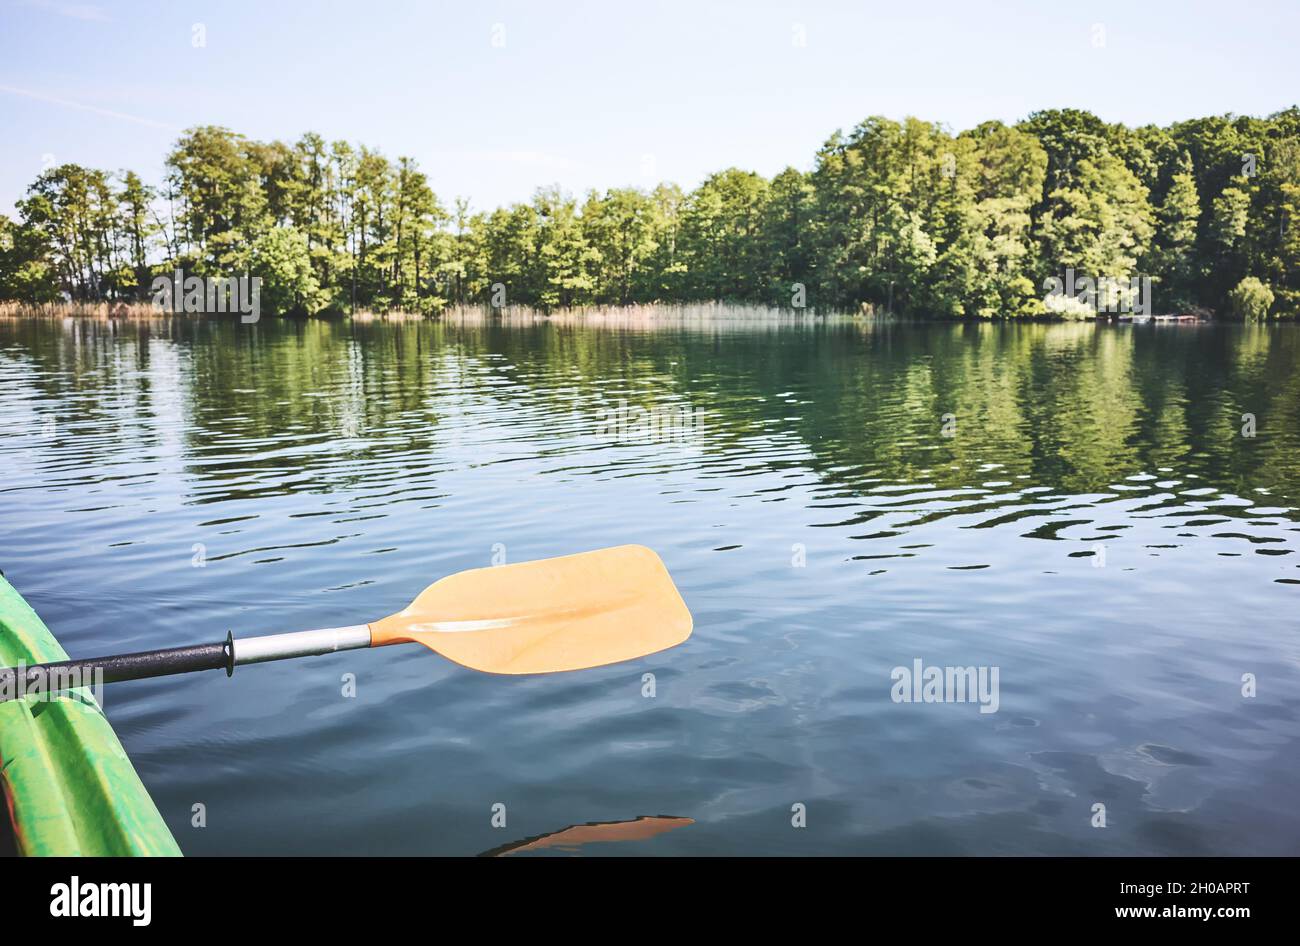 Kayak remar sobre el agua, concepto de ecoturismo, enfoque selectivo. Foto de stock